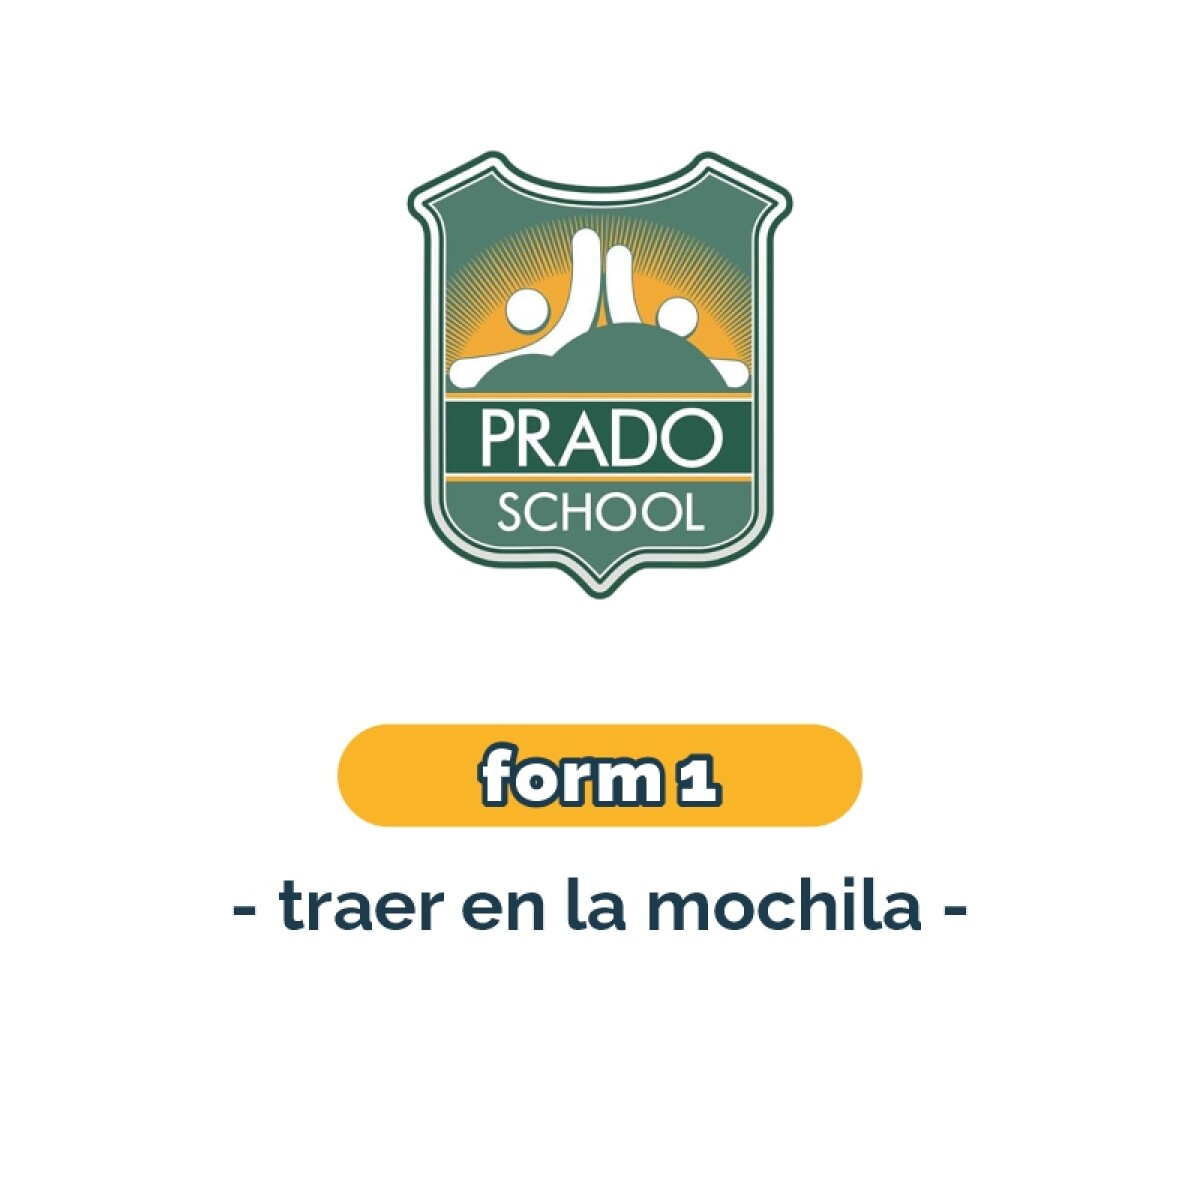 Lista de materiales - Primaria Form 1 Prado School 